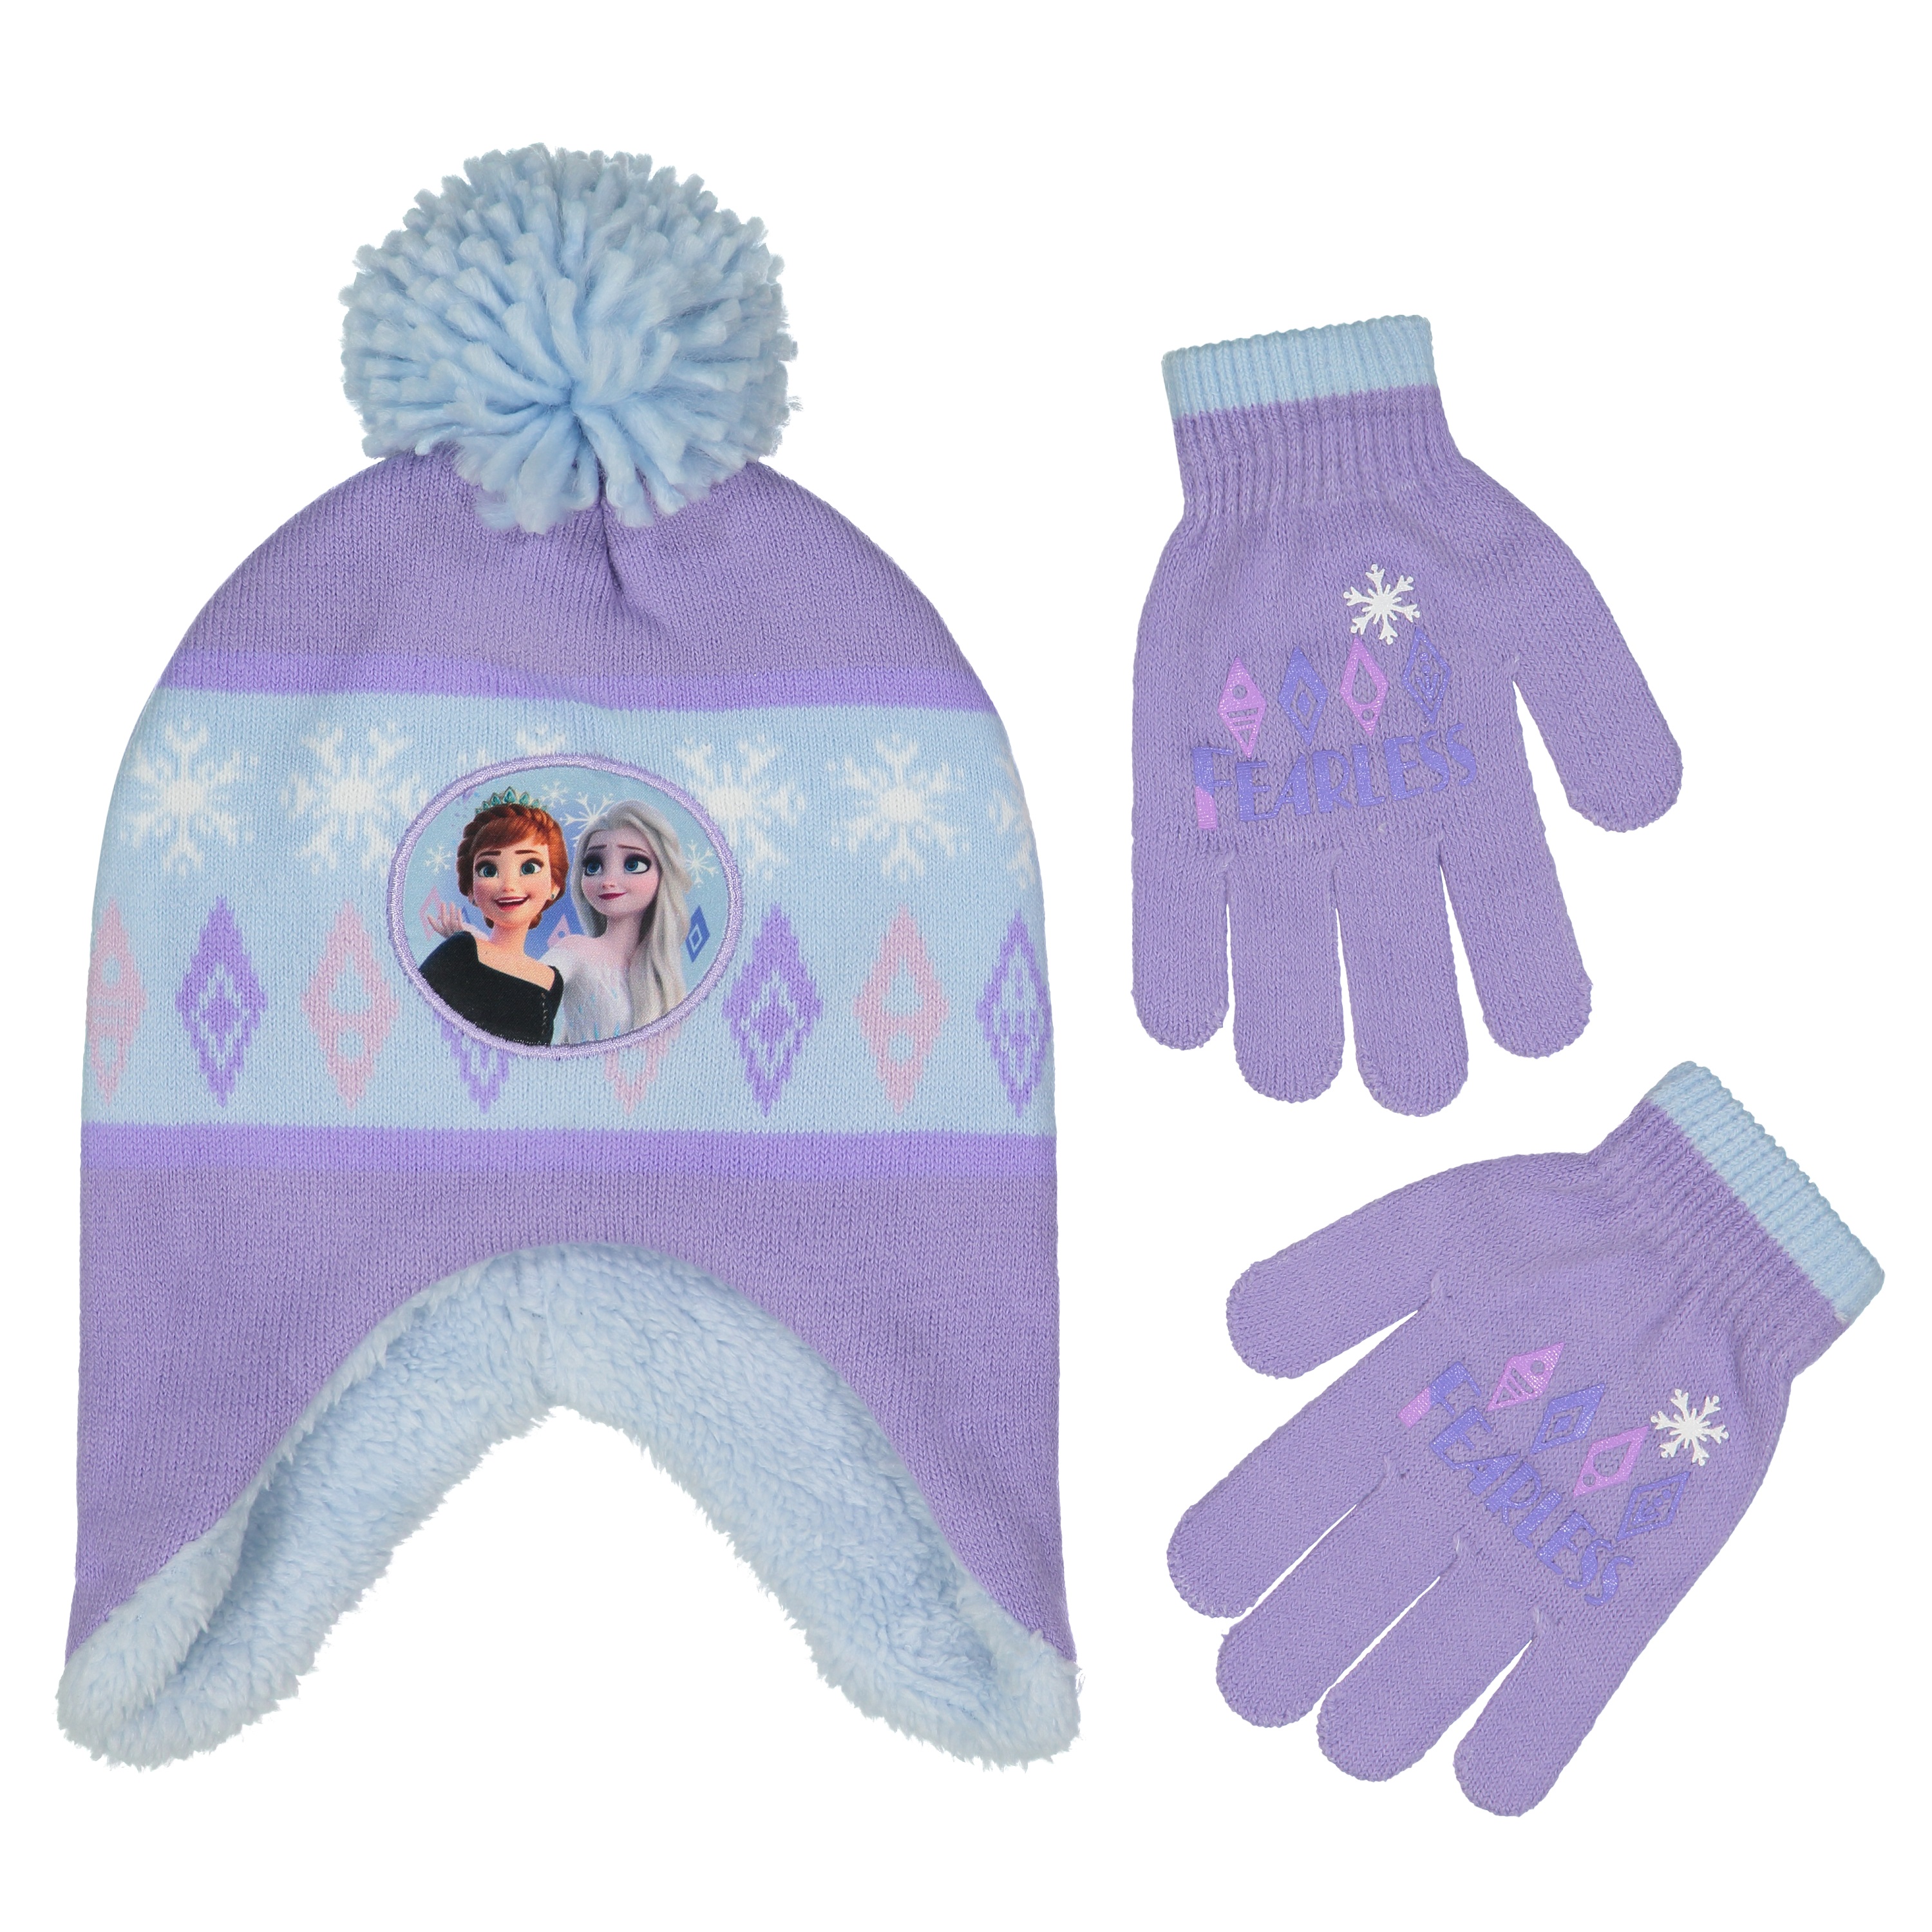 Disney Frozen New ELSA /& Anna Winter Knitted HAT /& Glove Set 52-54CM Baby Pink,54cm